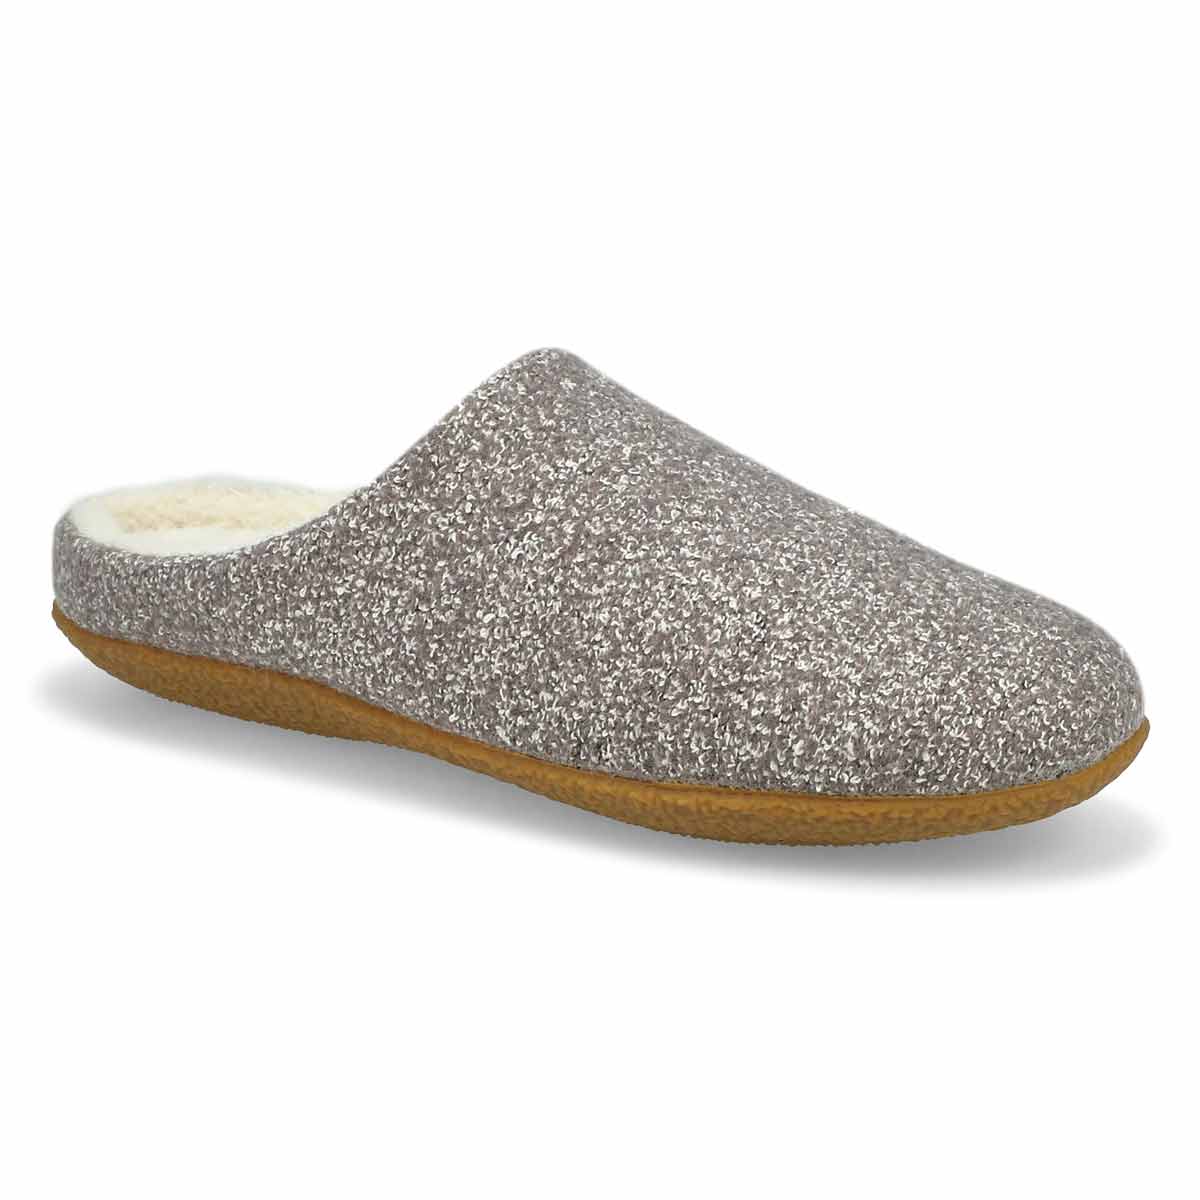 soft moc slippers womens